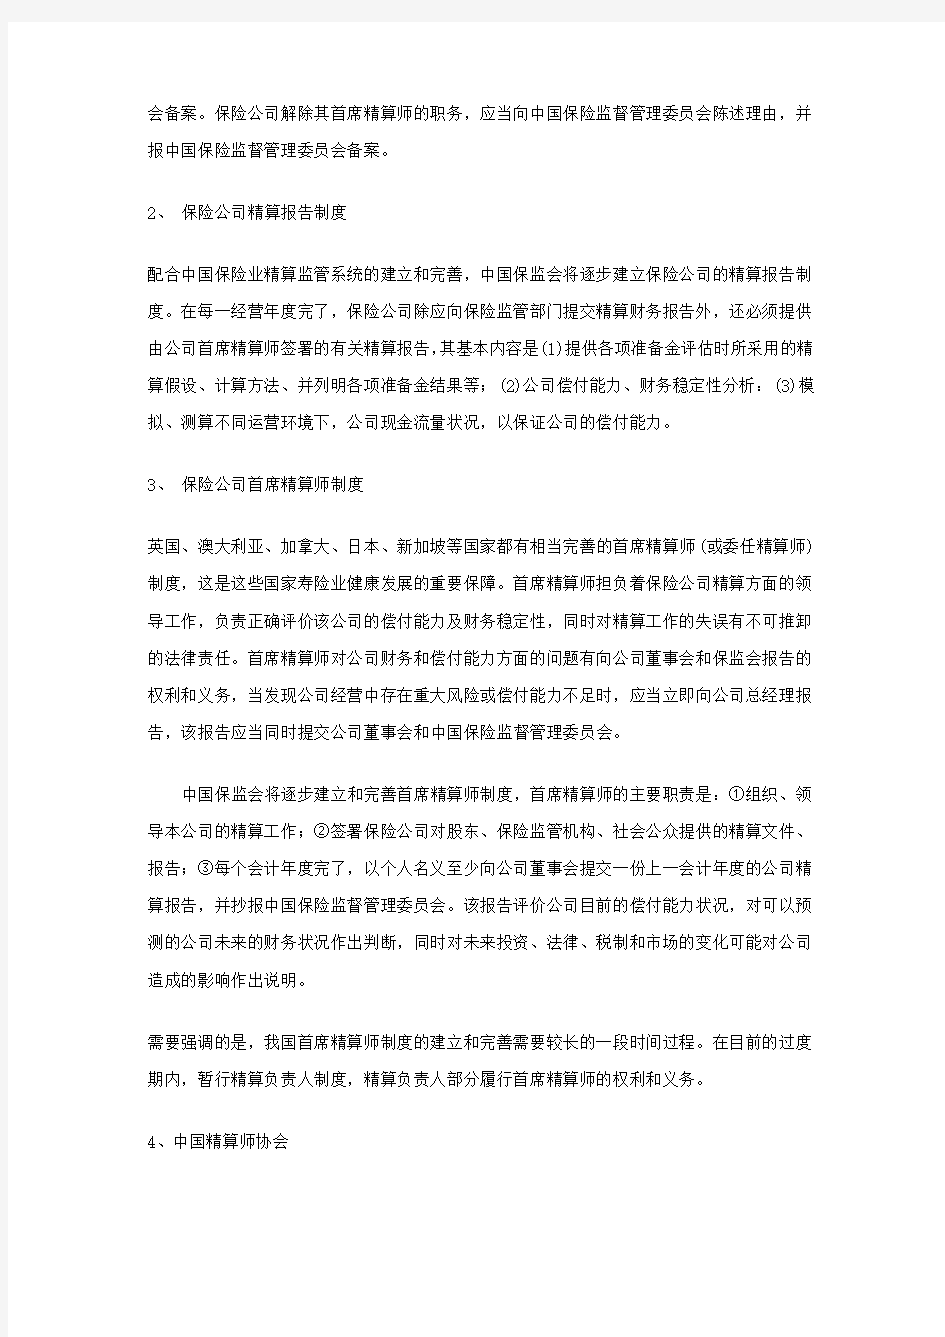 中国精算师资格考试体系简介 